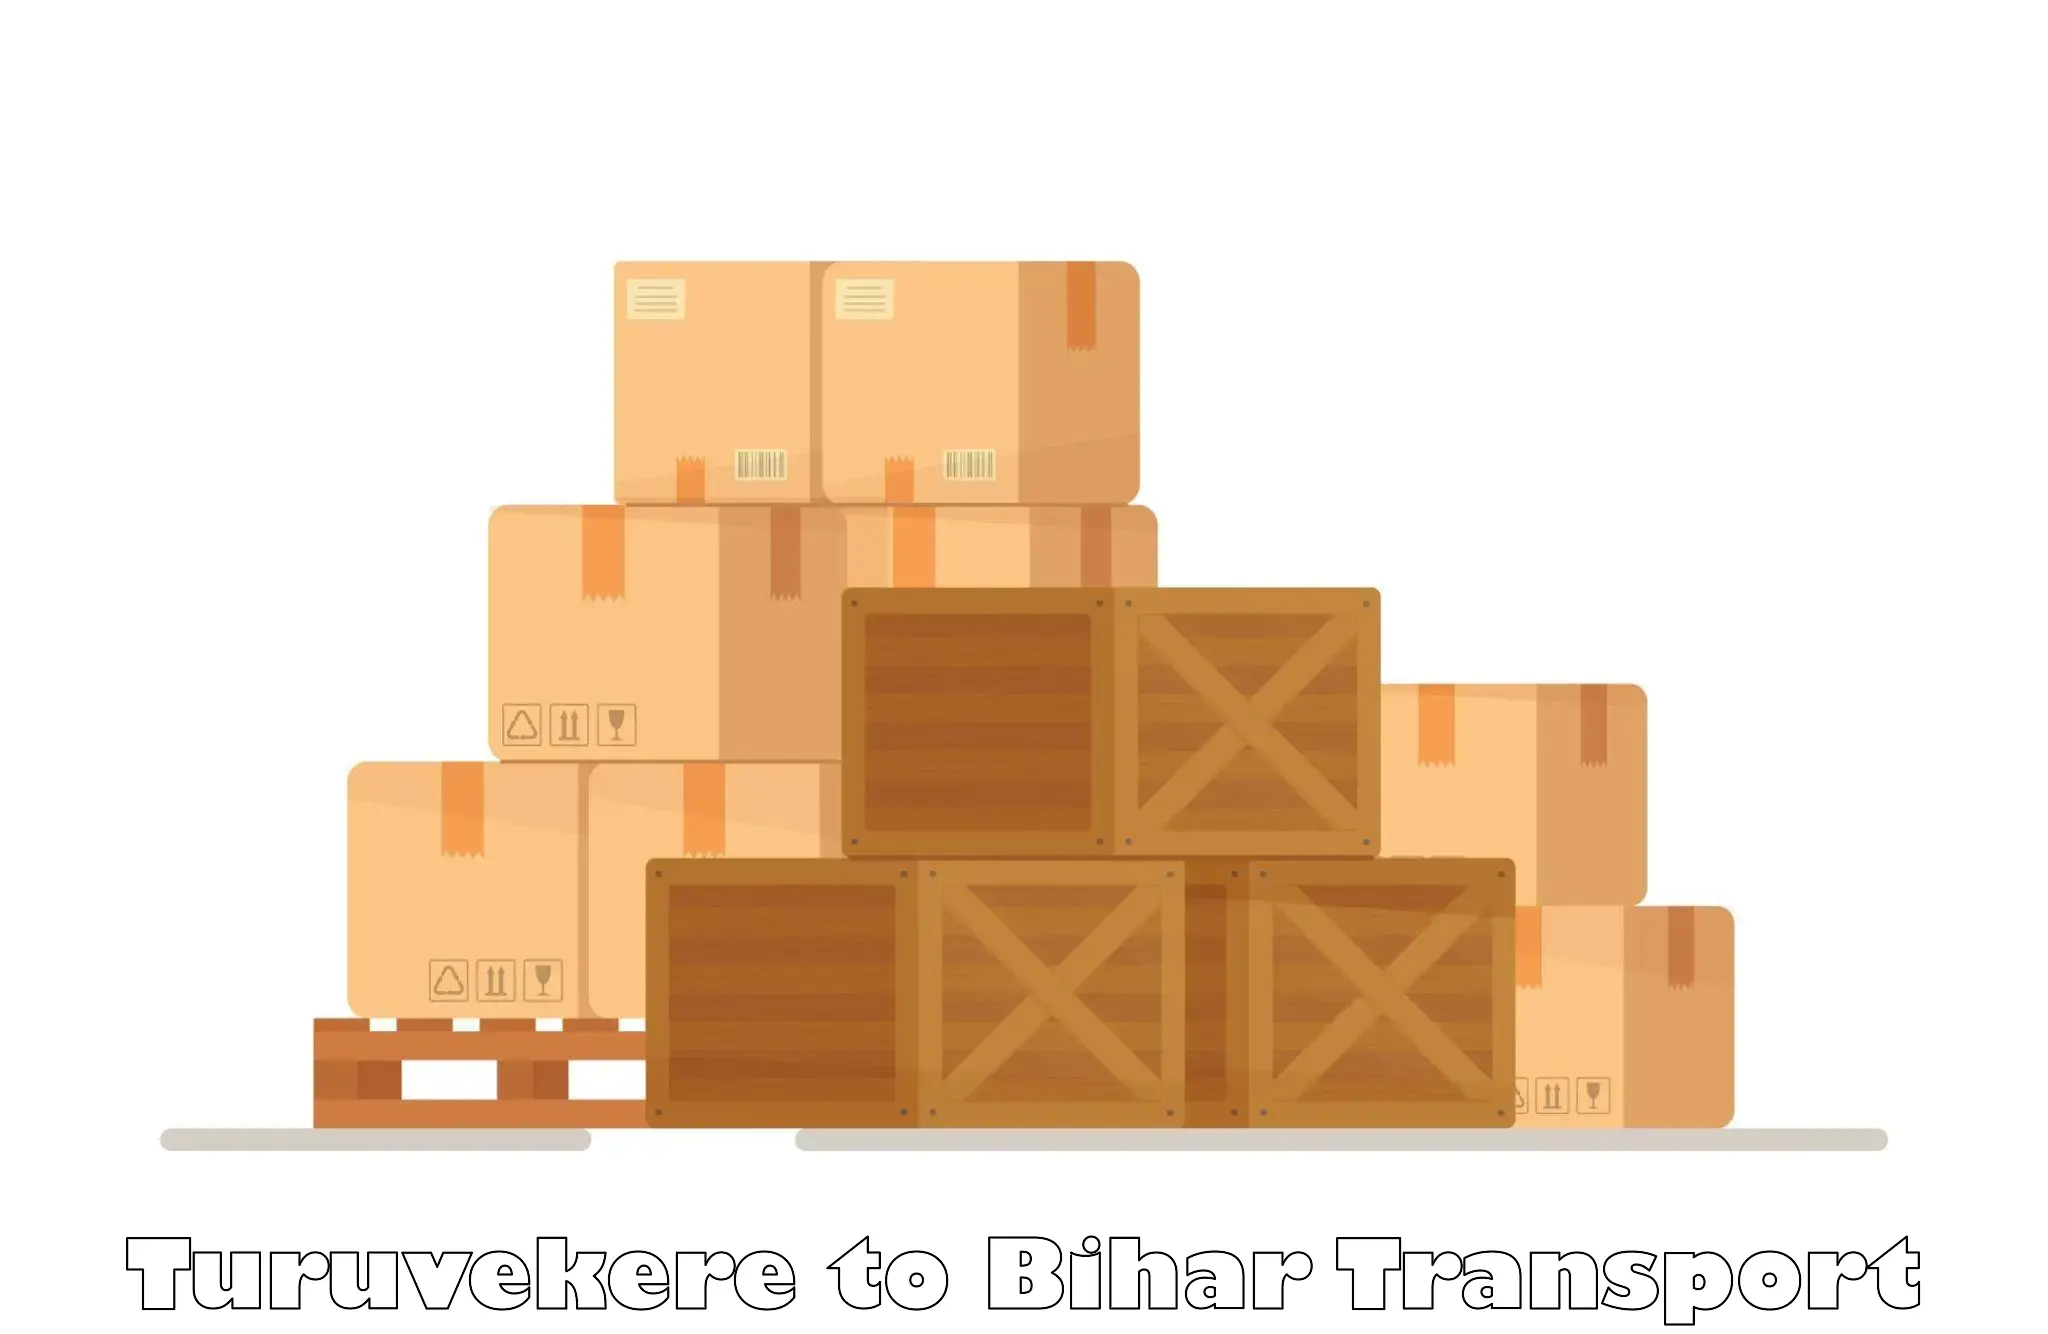 Furniture transport service Turuvekere to Jaynagar